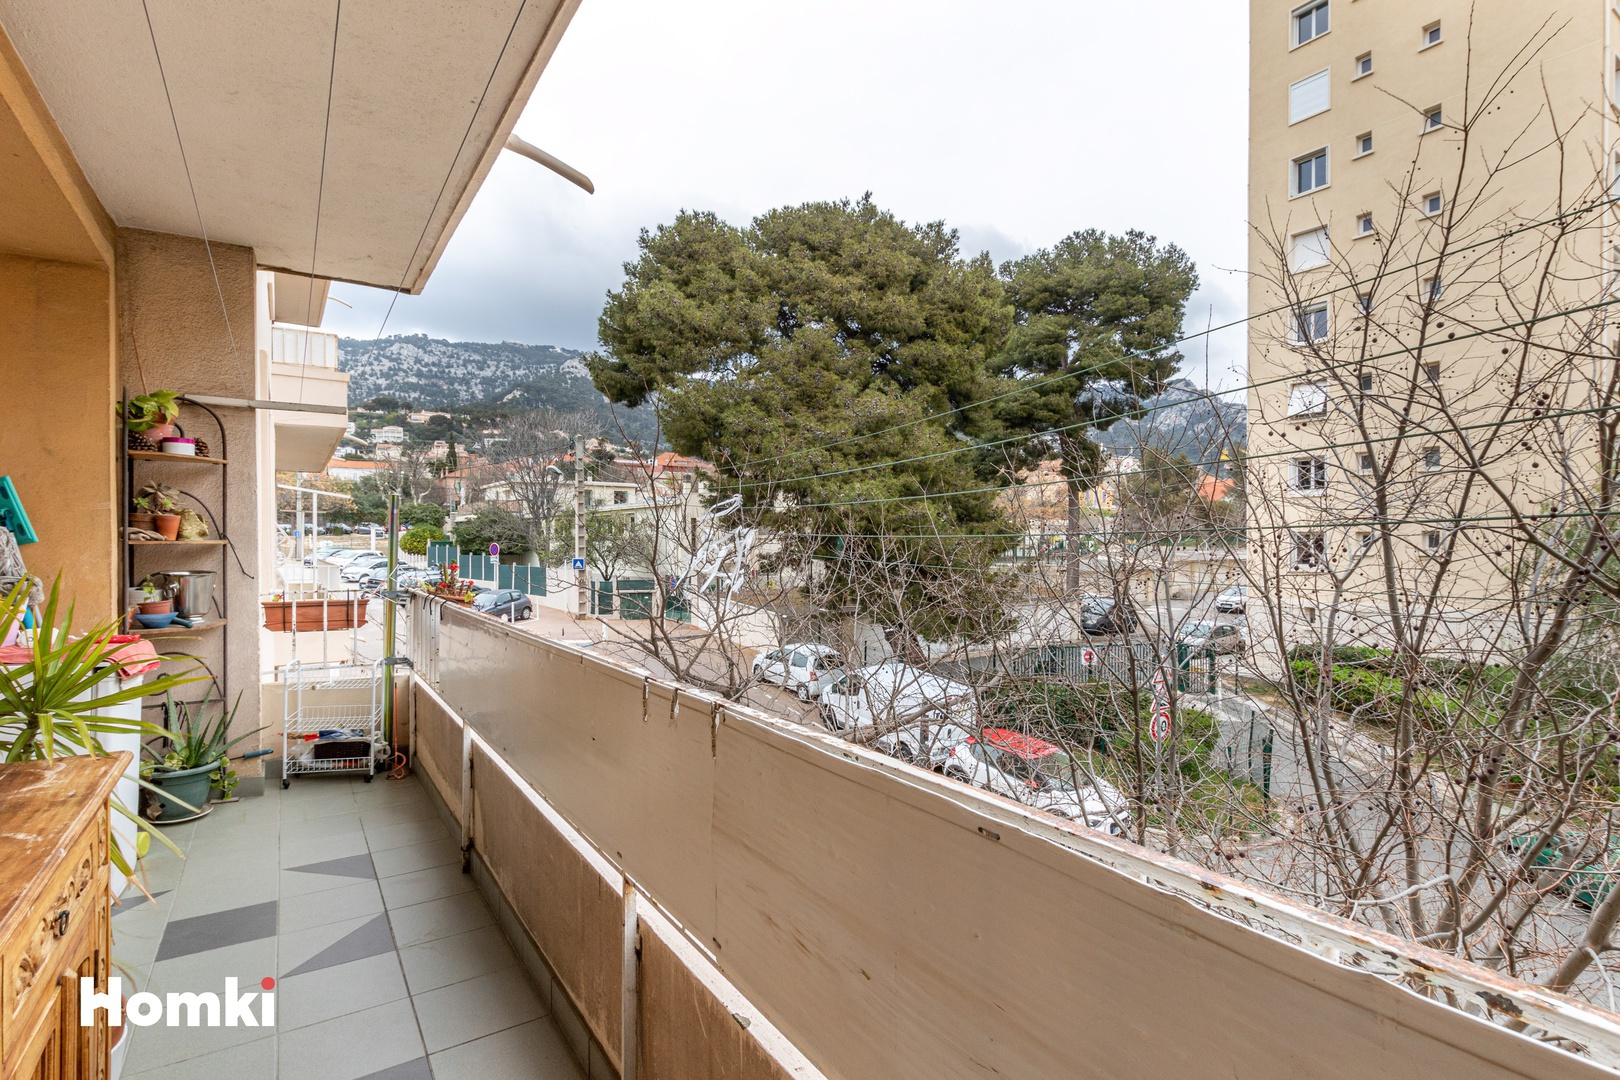 Homki - Vente Appartement  de 70.0 m² à Toulon 83200